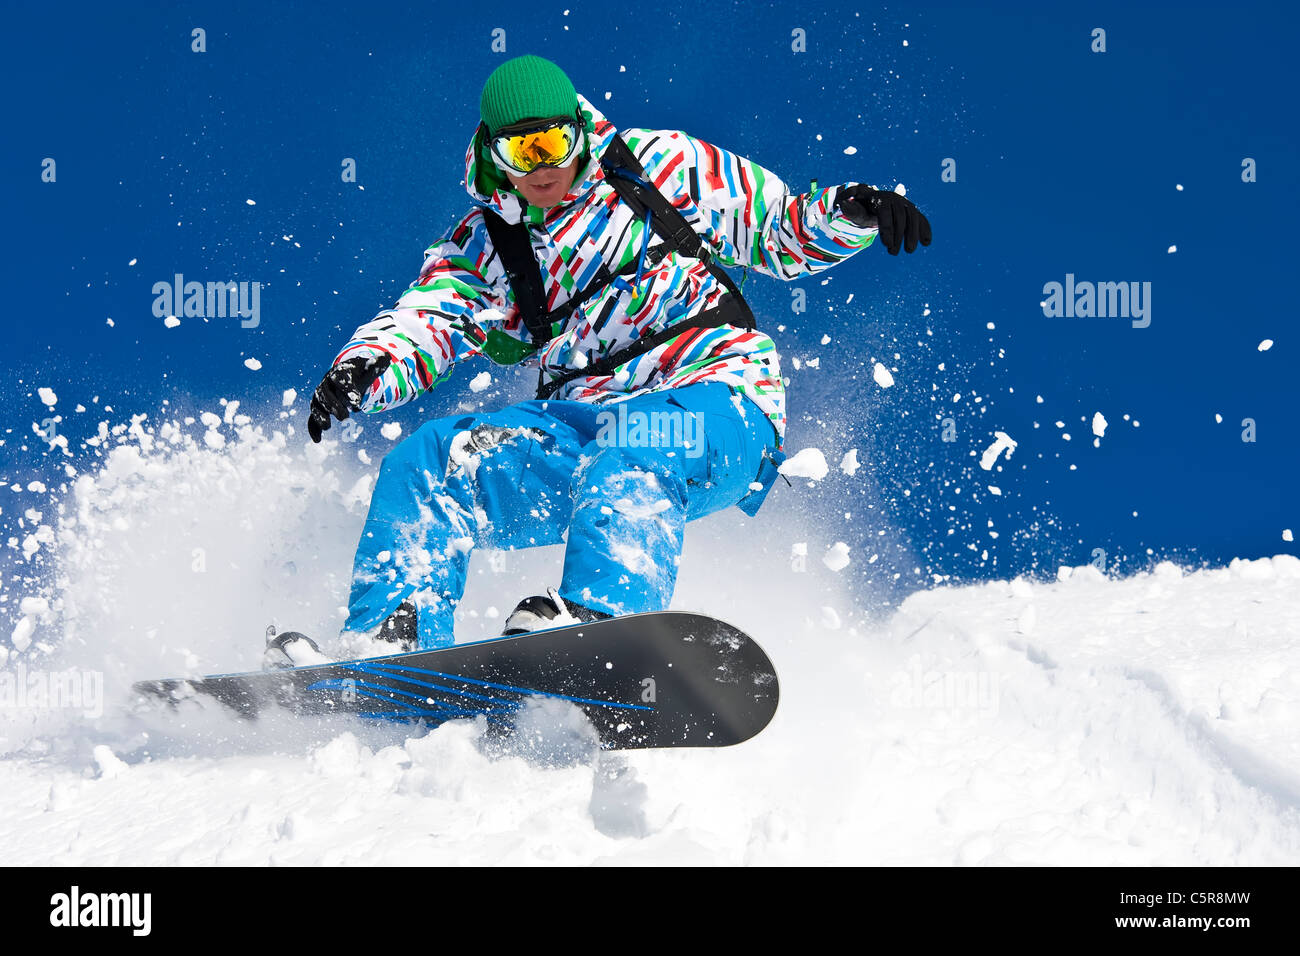 Un snowboarder riding disque hors piste à travers la neige. Banque D'Images